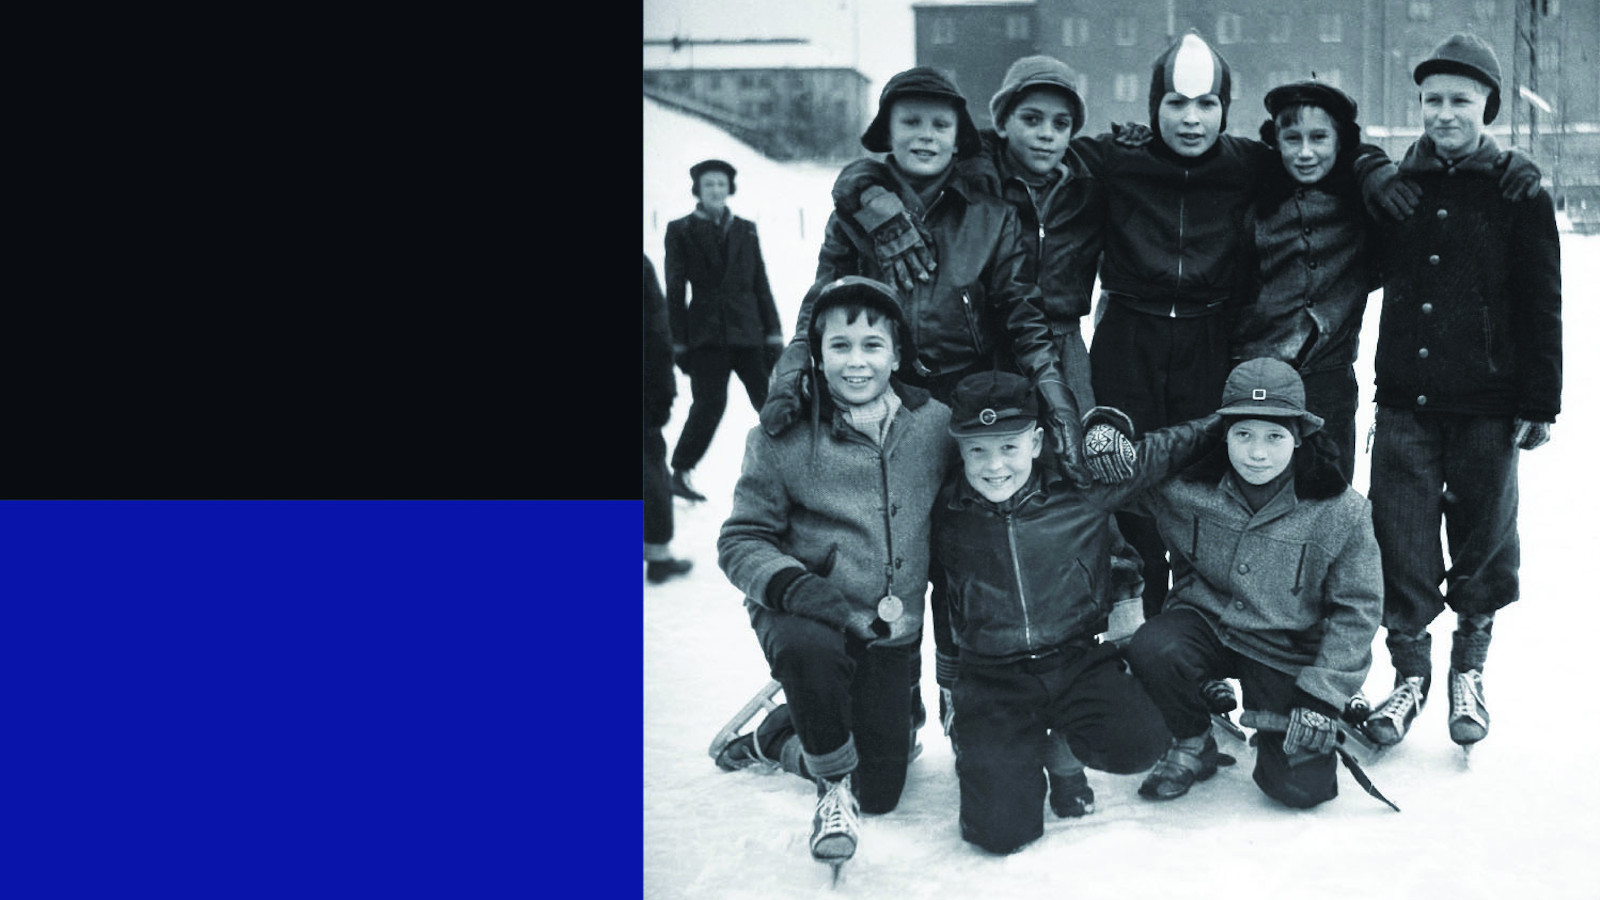 Kuvassa on osa kirjan kannesta.  Vasemmalla on sinistä ja mustaa ja oikealla poikajoukko asettuneena valokuvaan talvella.